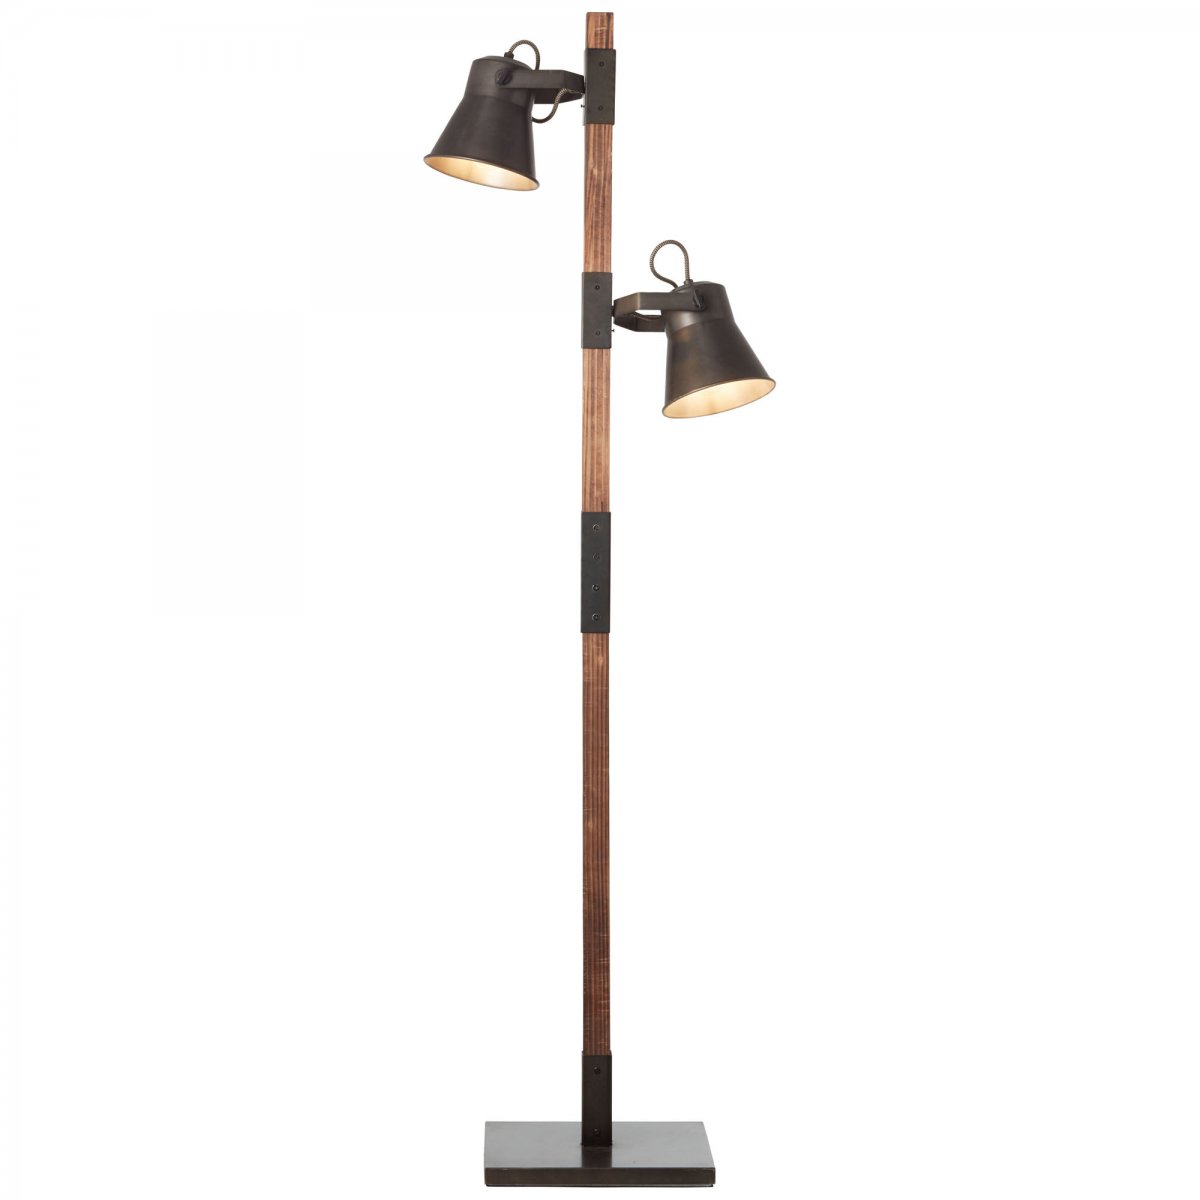 Brilliant Leuchten No. & Standleuchte Holz 82156-46 LED Plow online kaufen Leuchten Lampen --> schwarz-stahl im 2-flg